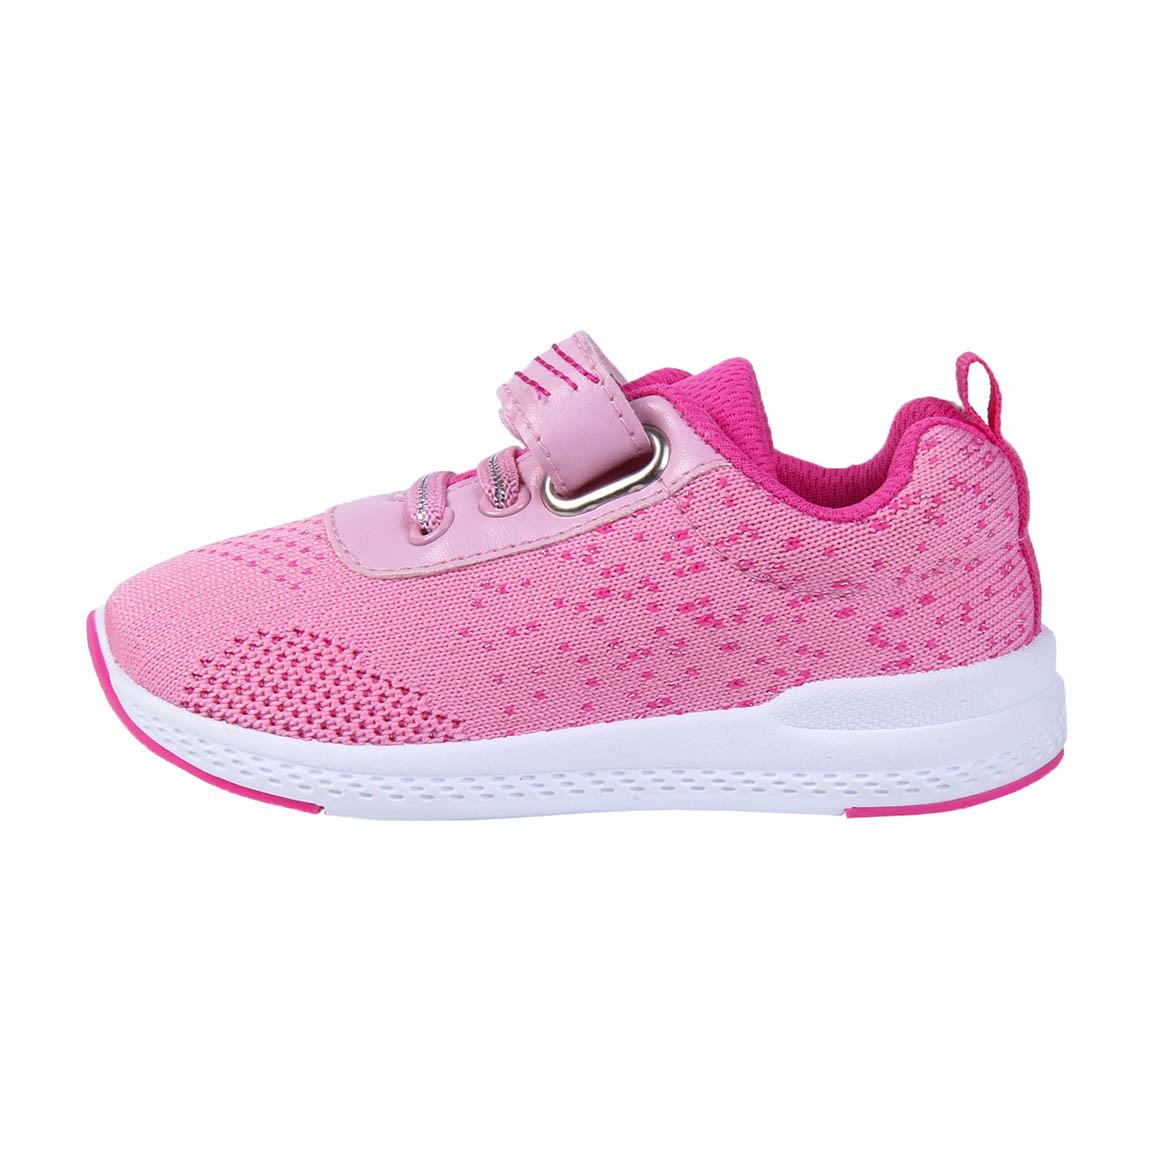 Κορίτσι Sneaker ρόζ Peppa Pig 2300004939